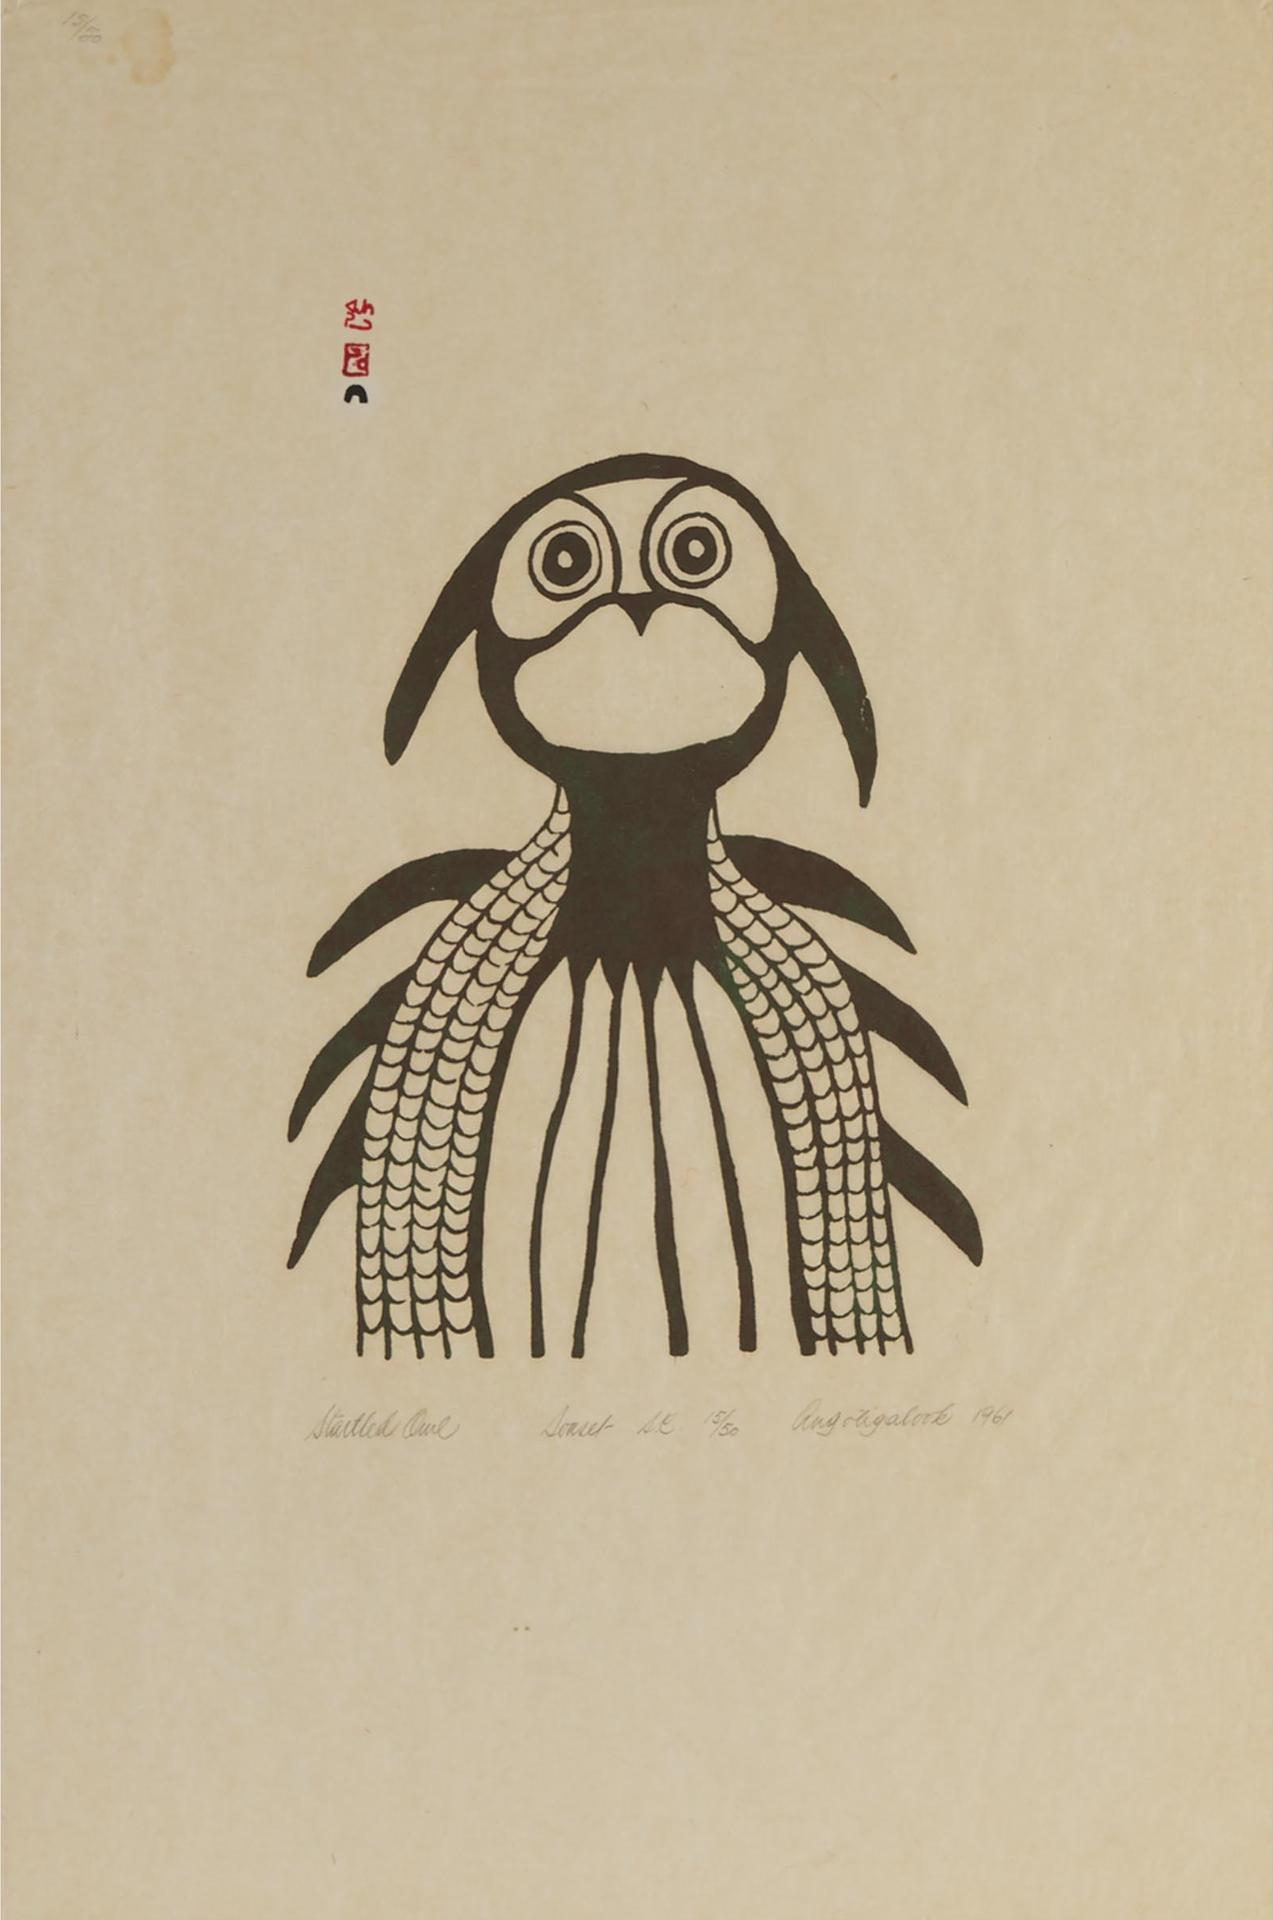 Angotigolu Teevee (1910-1967) - Startled Owl